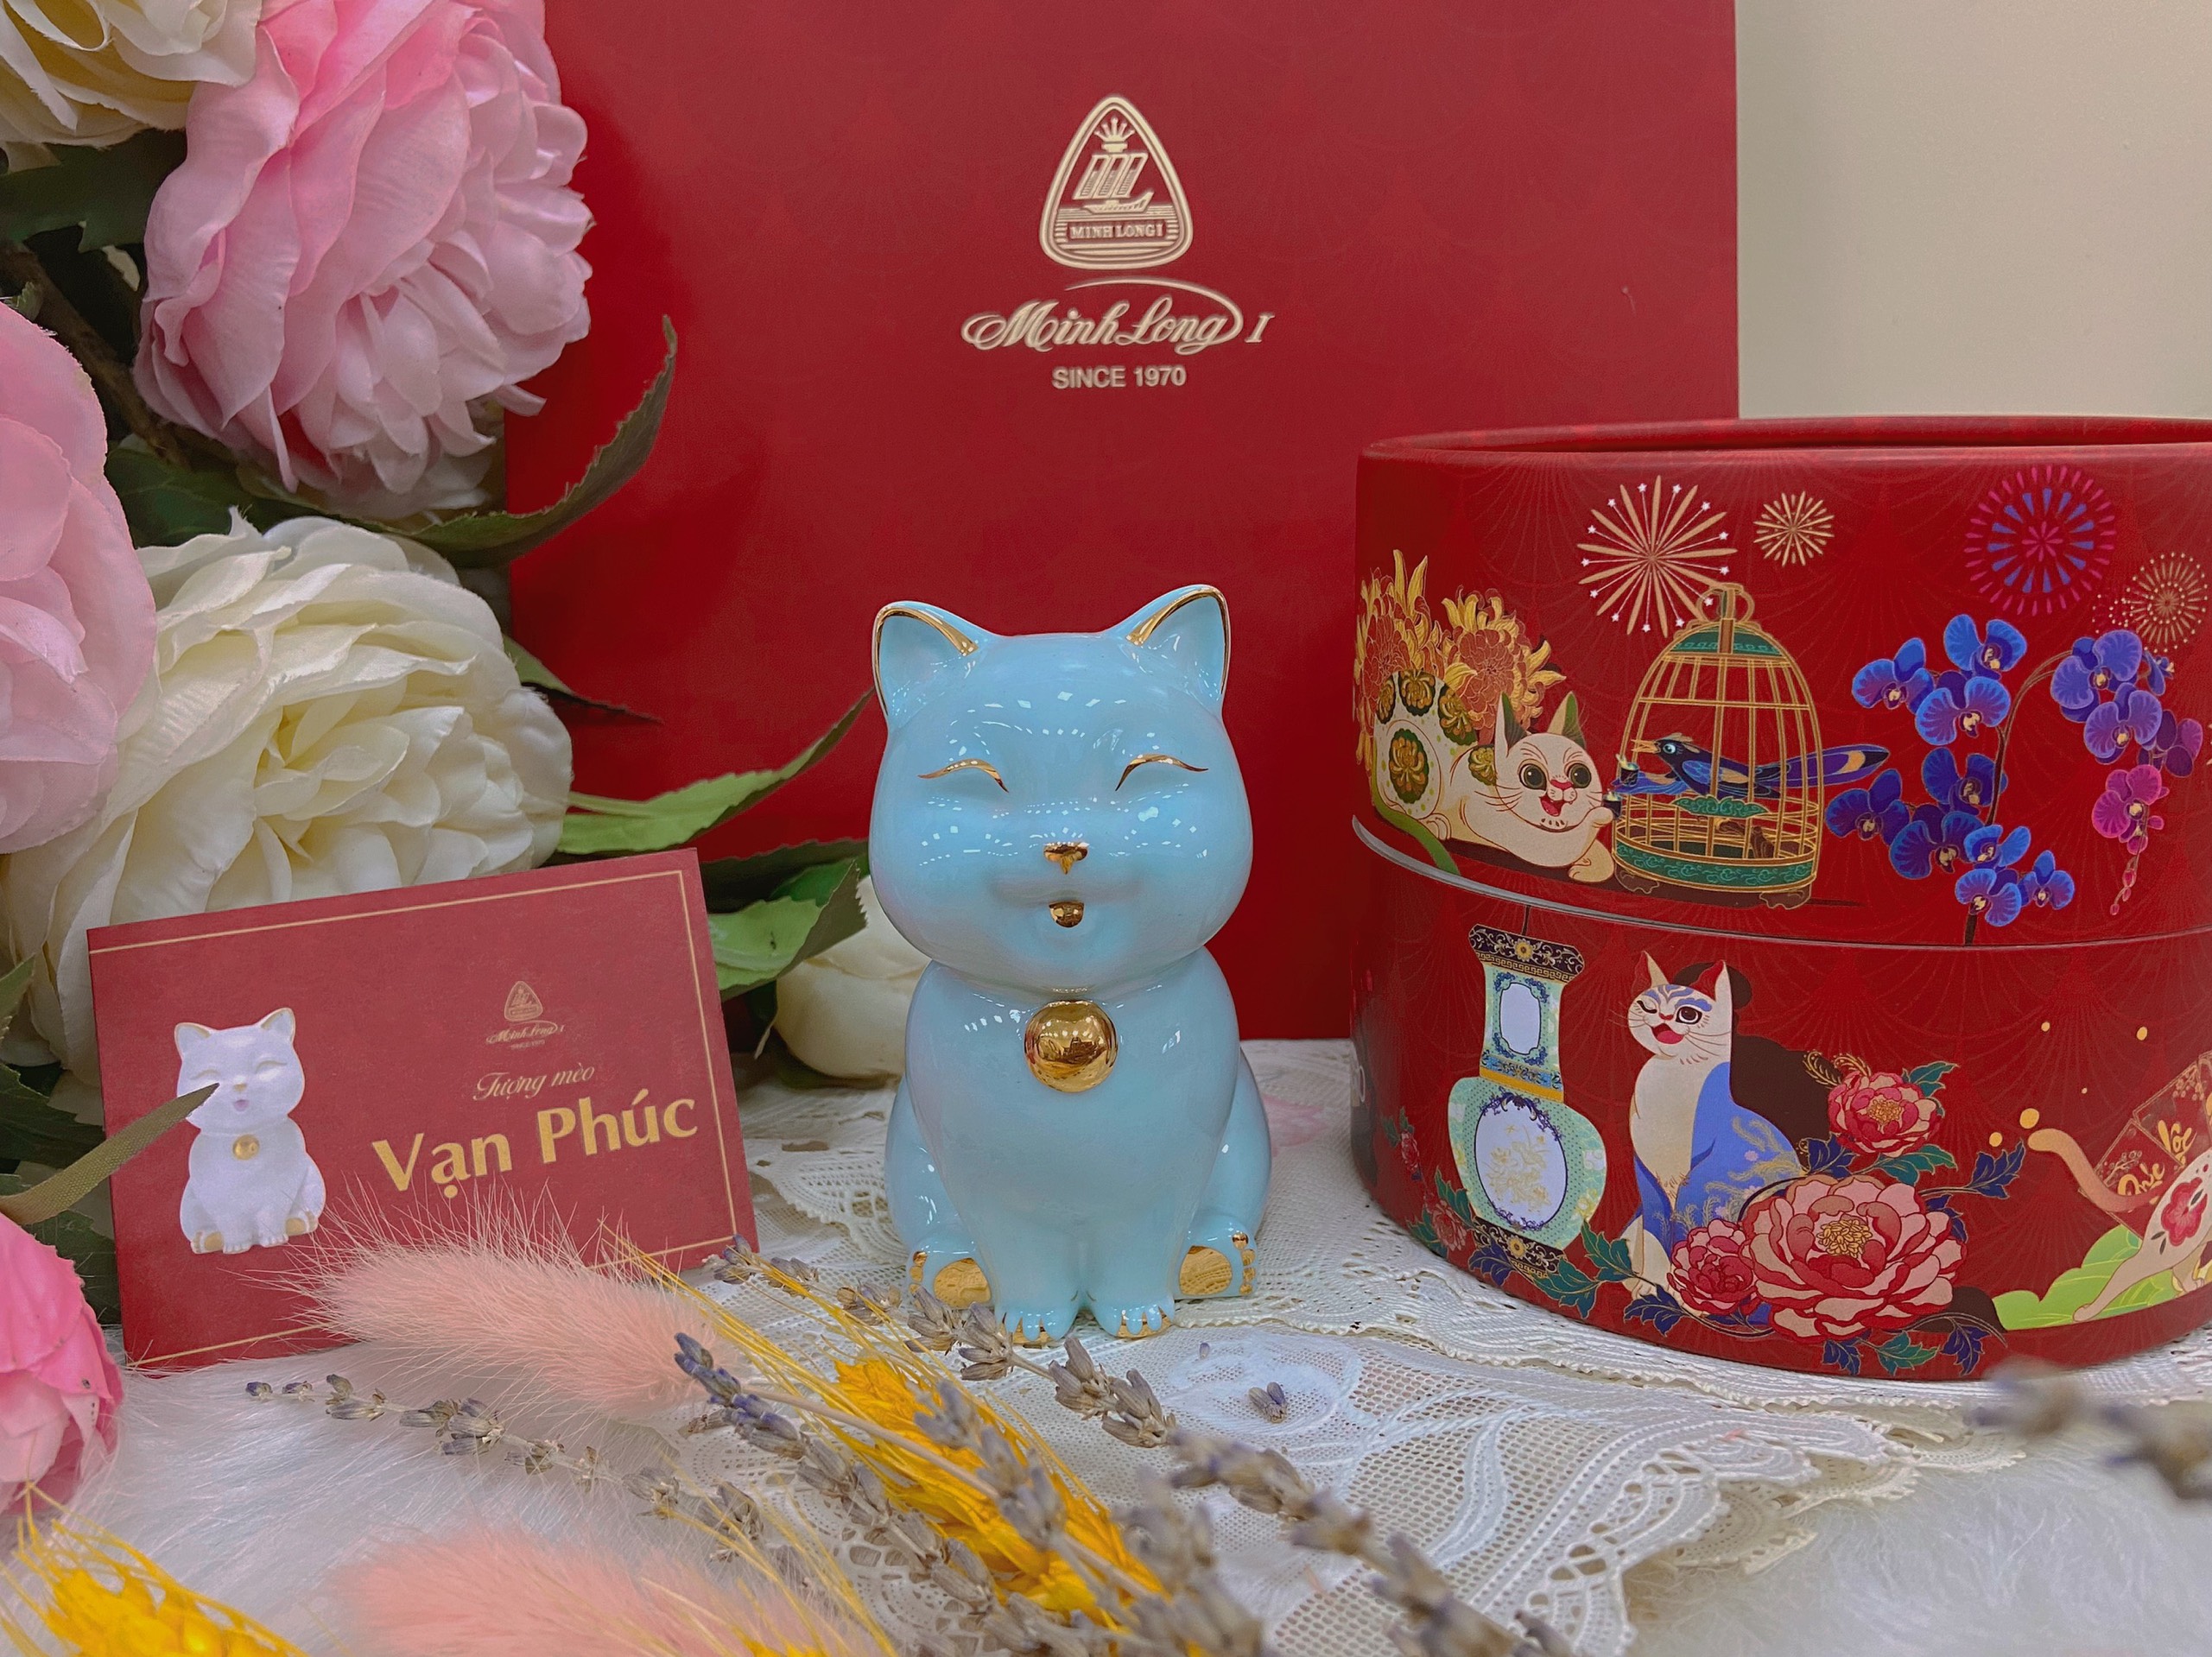 Mèo Vạn Phúc 9.5 cm - Xanh ngọc - Trang trí vàng - Gốm sứ cao cấp Minh Long